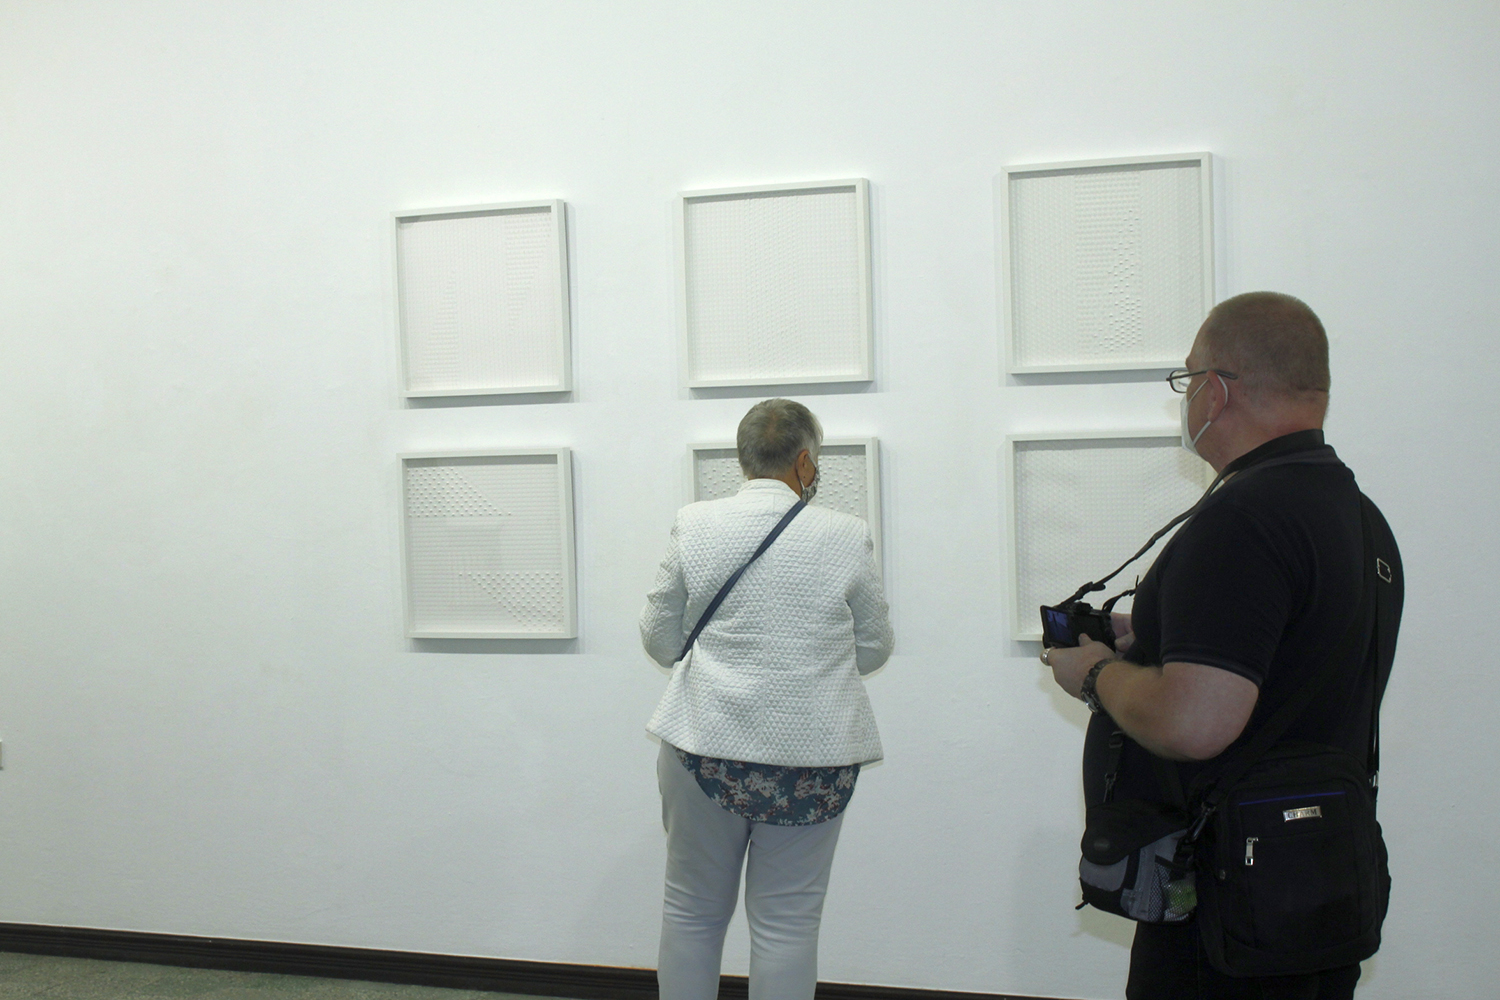 Kilka zwiedzających wystawę osób, na tle jasnego wnętrza galerii.  Widać tu sześć kwadratowych, białych prac rozwieszonych w dwu rzędach. Światło wydobywa strukturę prac i czyni ją dobrze widoczną nawet z dużej odległości.